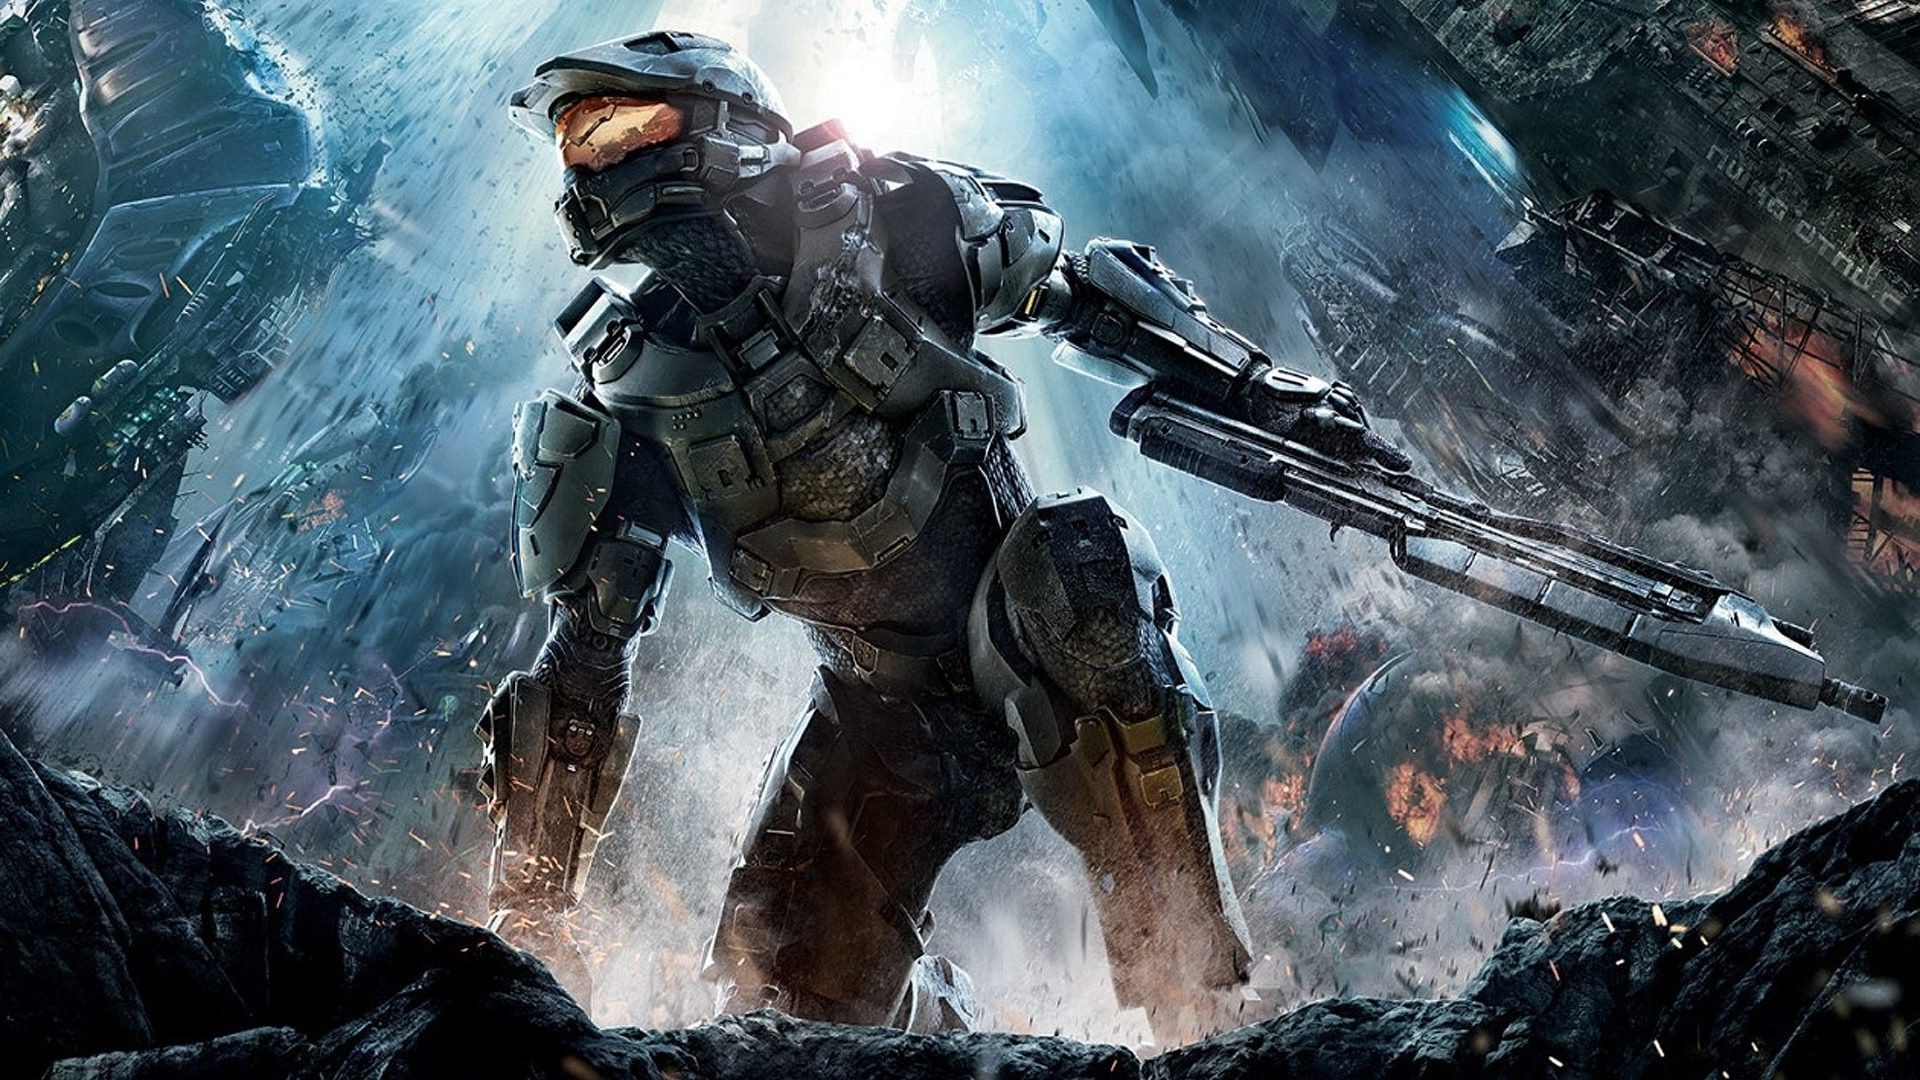 Halo 4 arrive sur PC le 17 novembre prochain